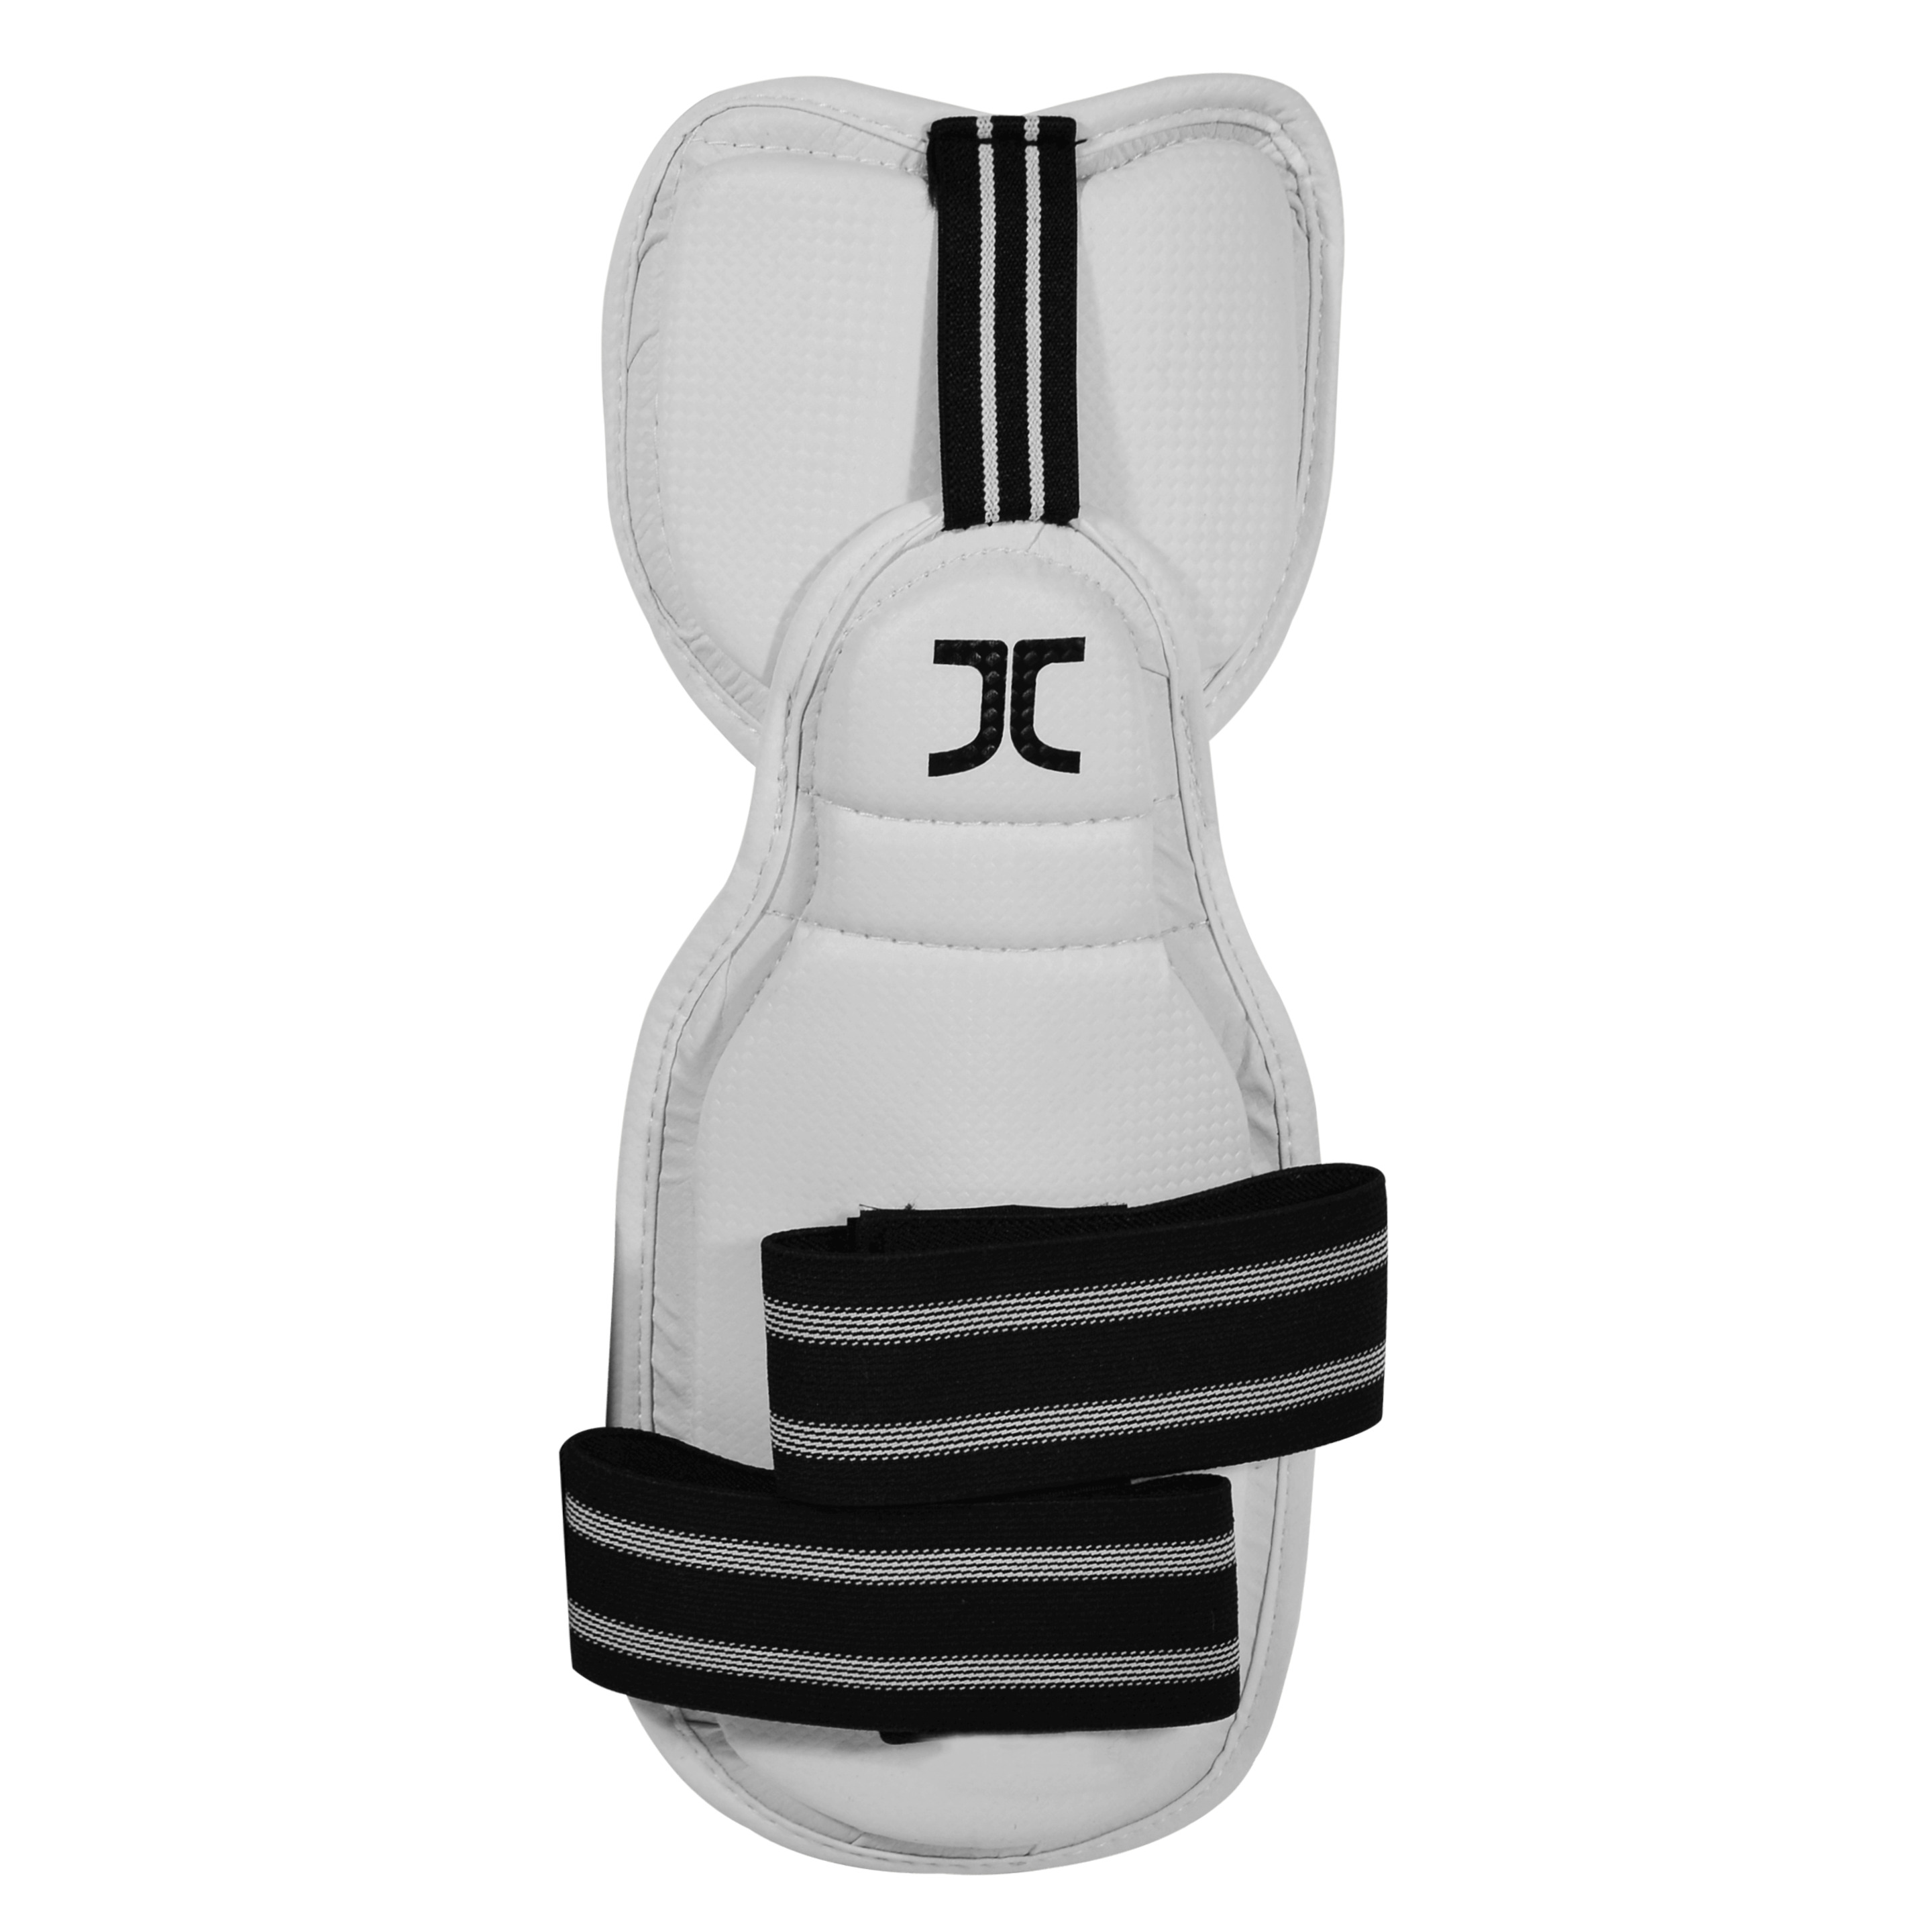 Antebrazos De Taekwondo Con Codo Jc - blanco - 